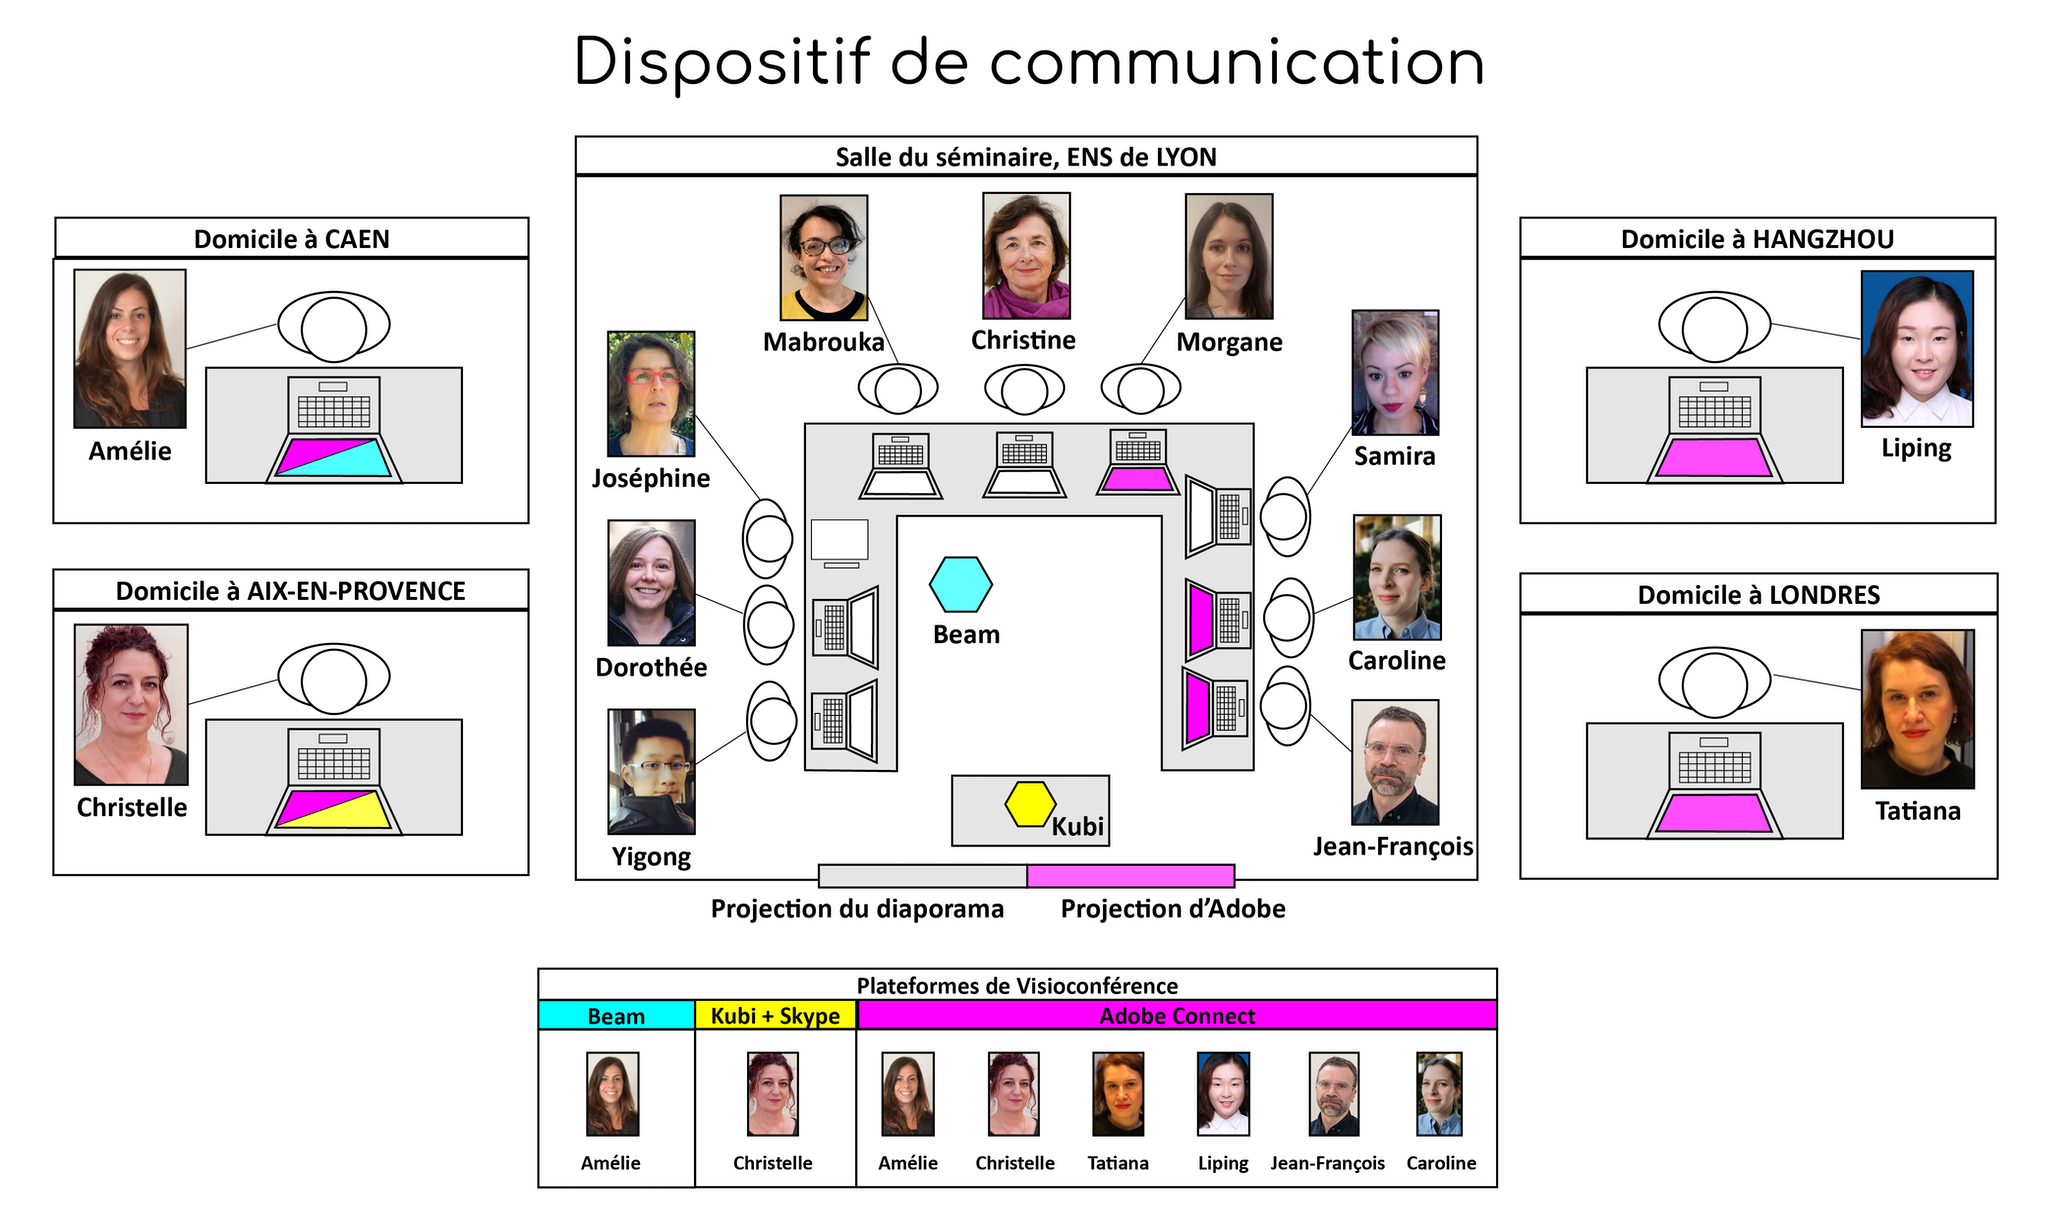 Figure 1 : Dispositif de communication